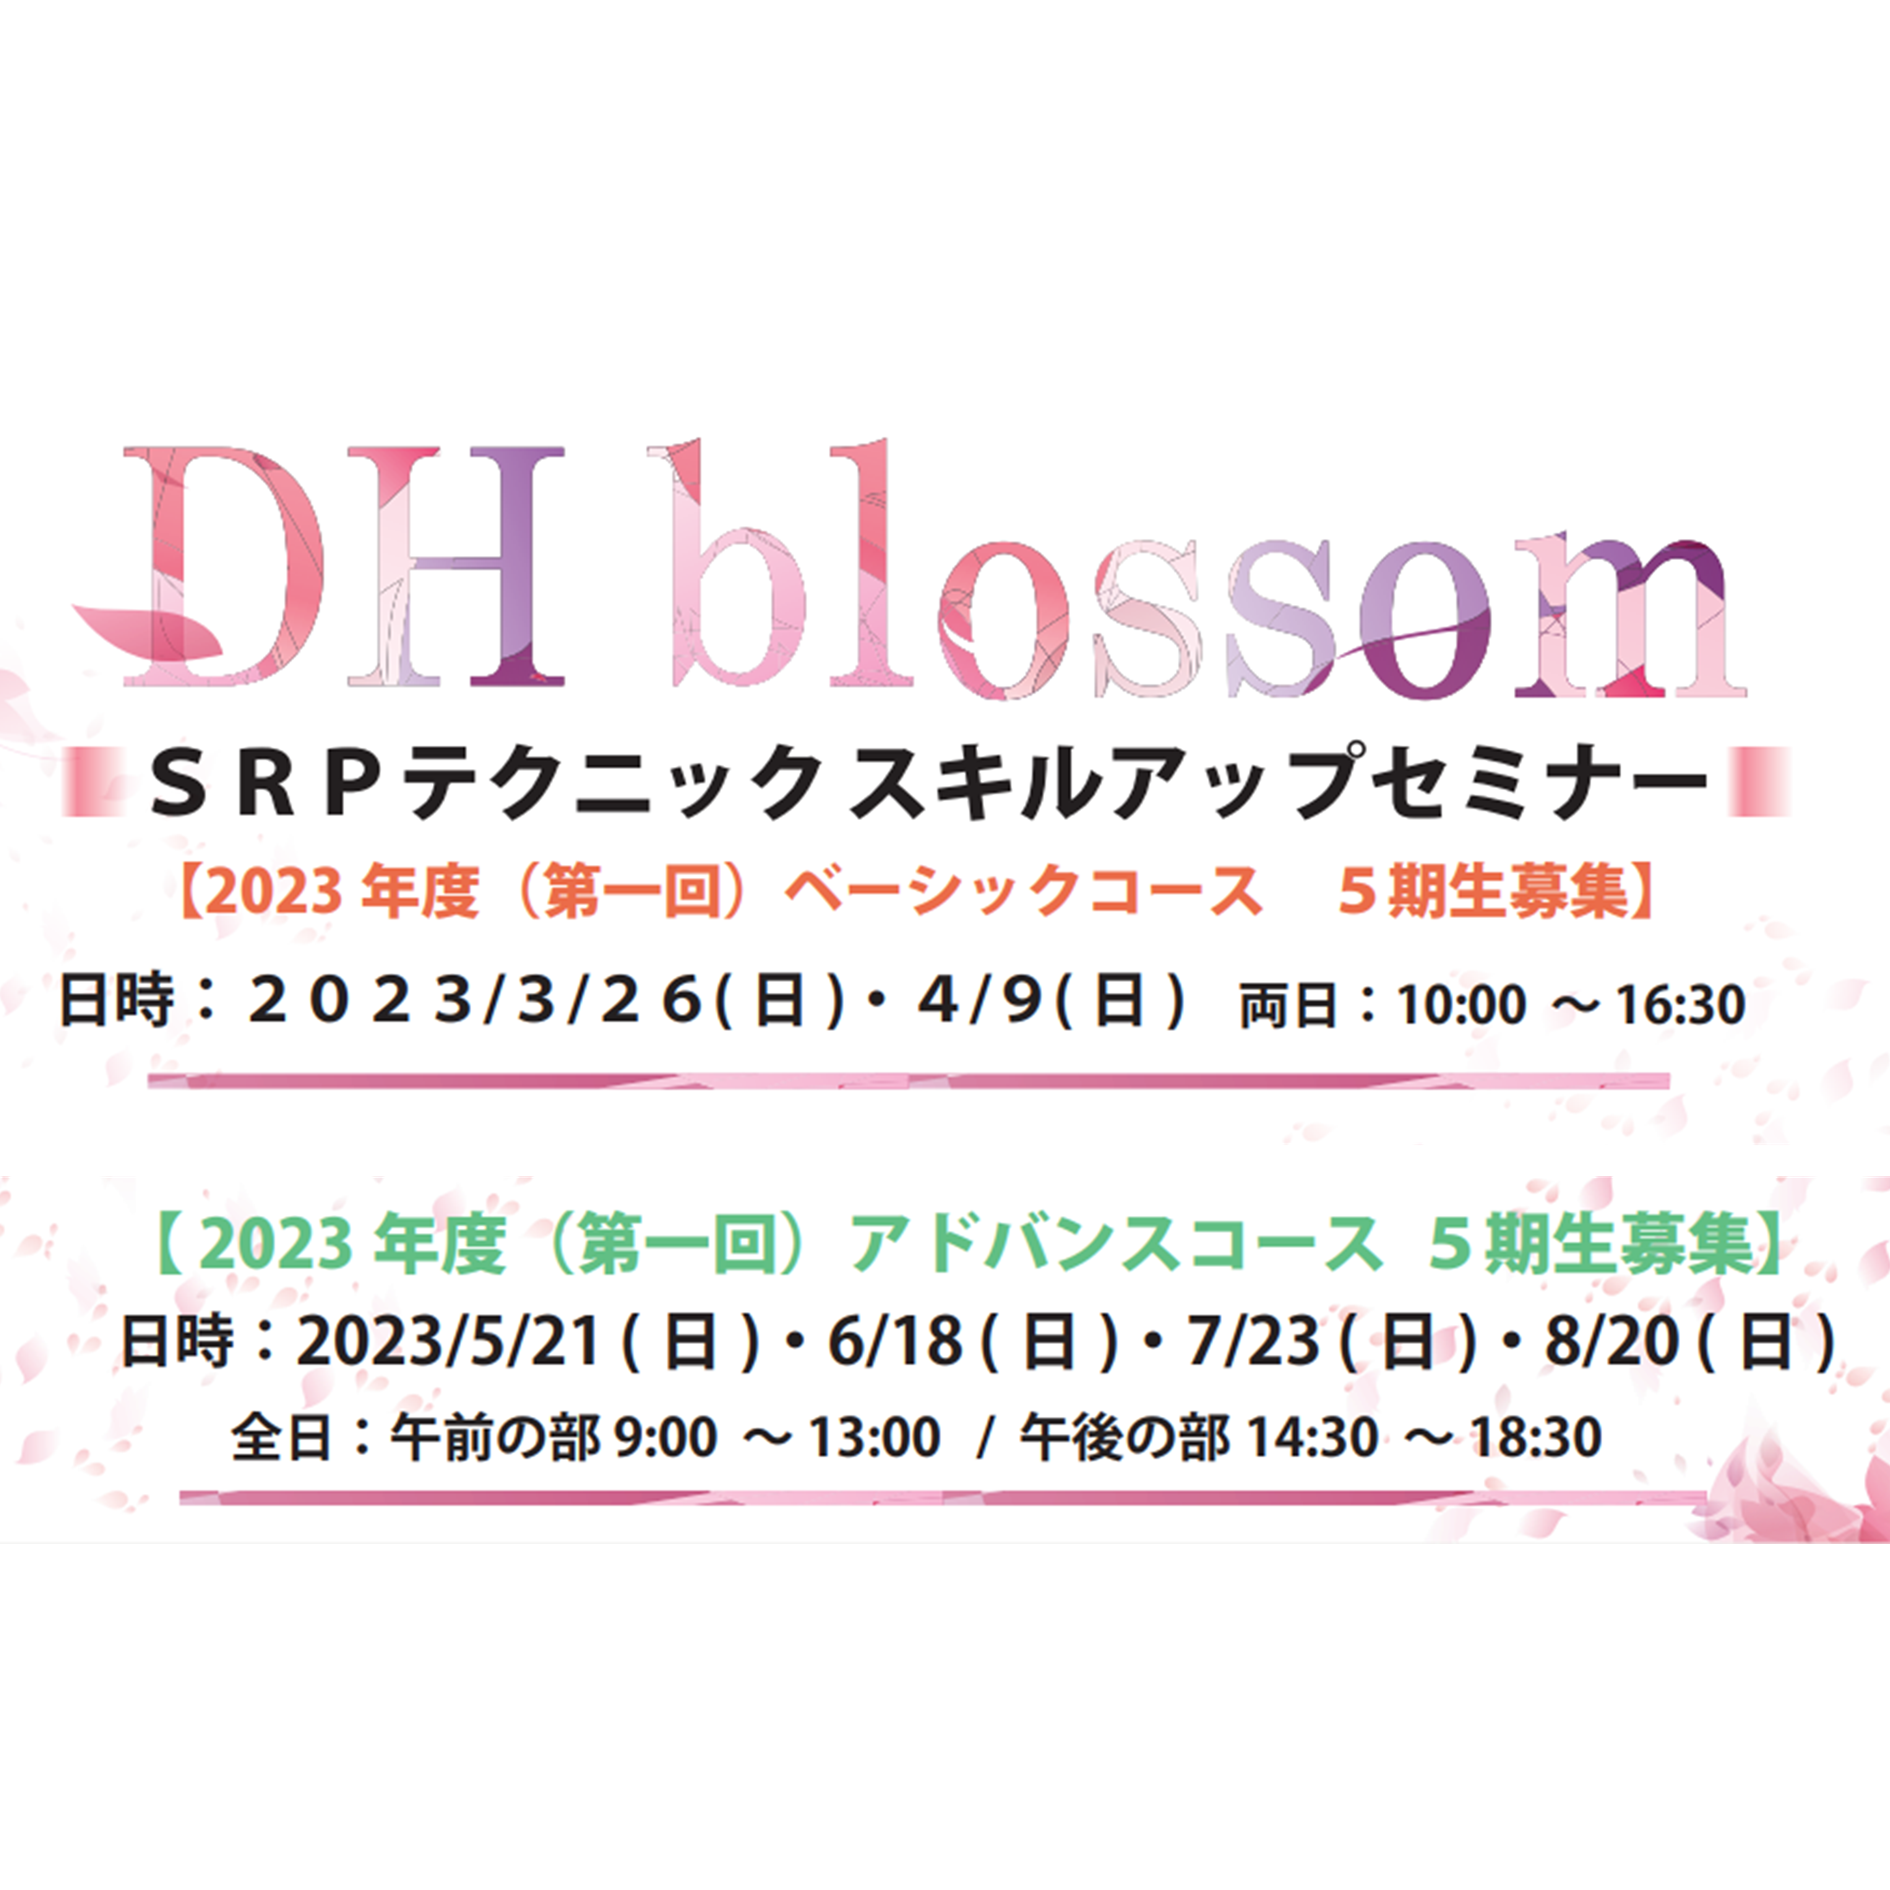 【大阪開催】DHblossom SRPテクニックスキルアップセミナー(5期生募集)